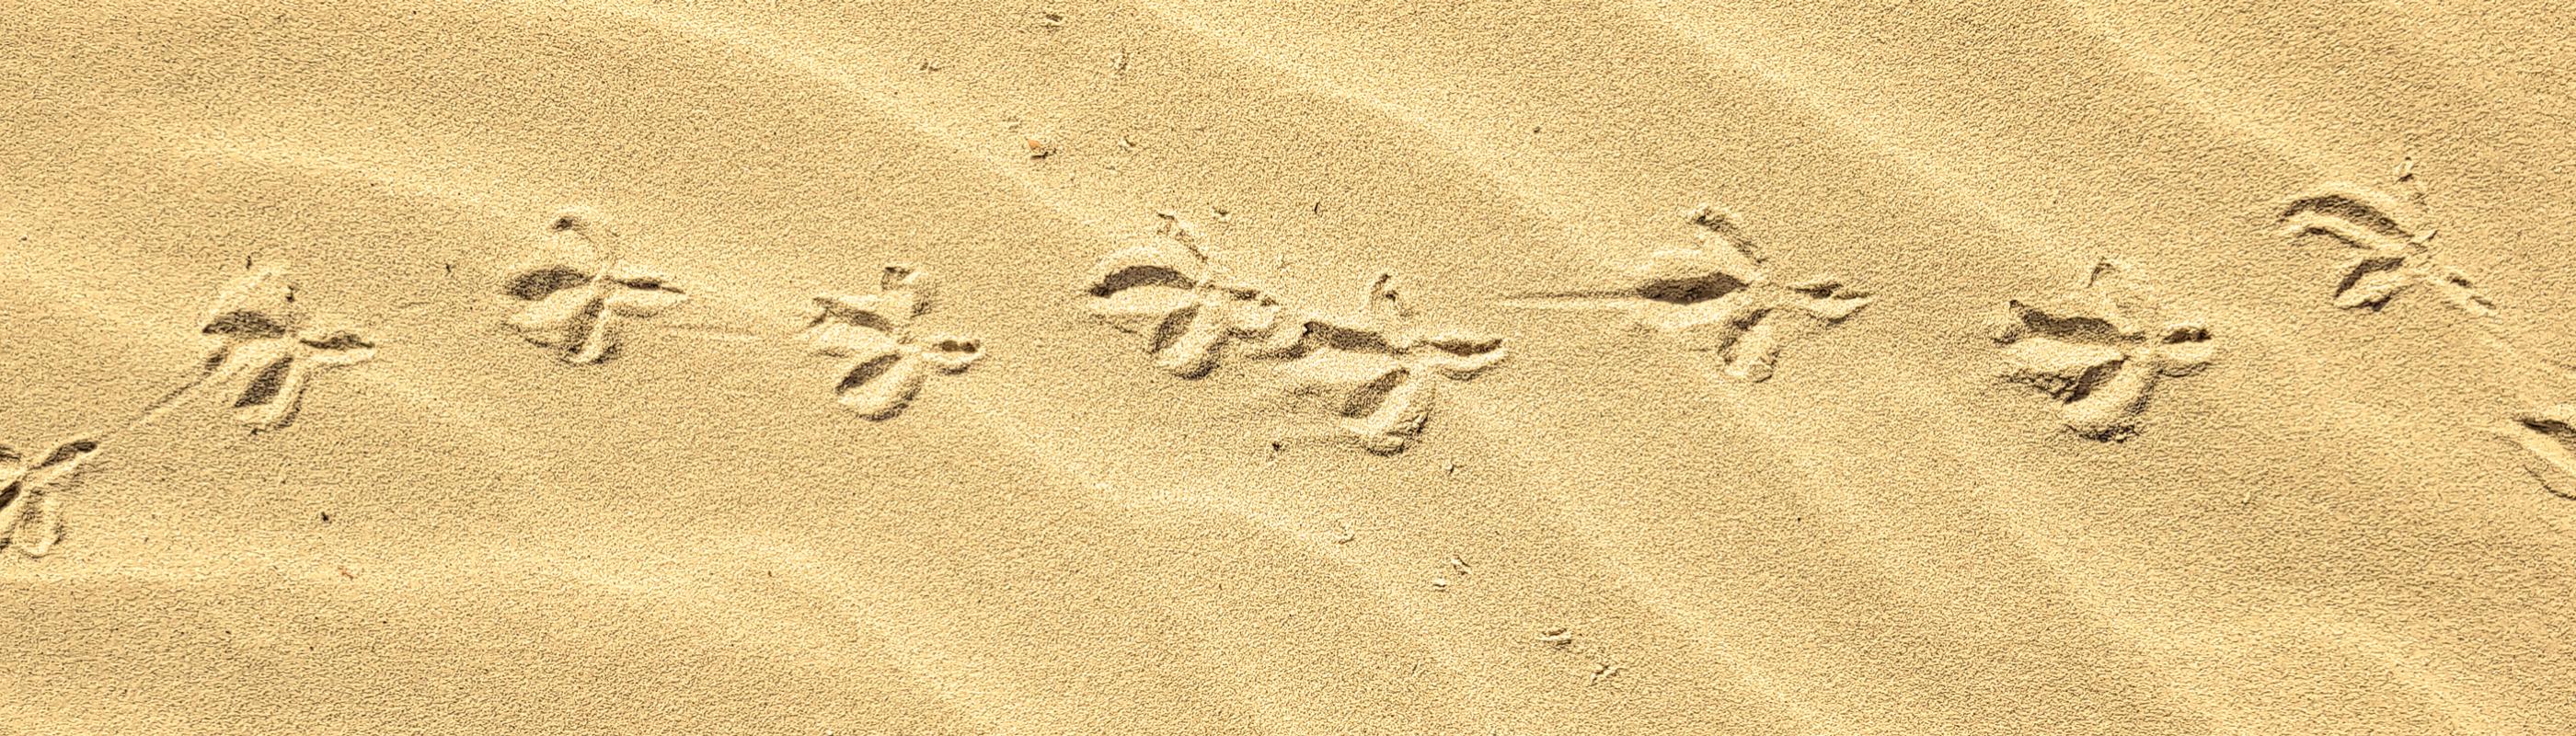 Bird footprints in sand dune